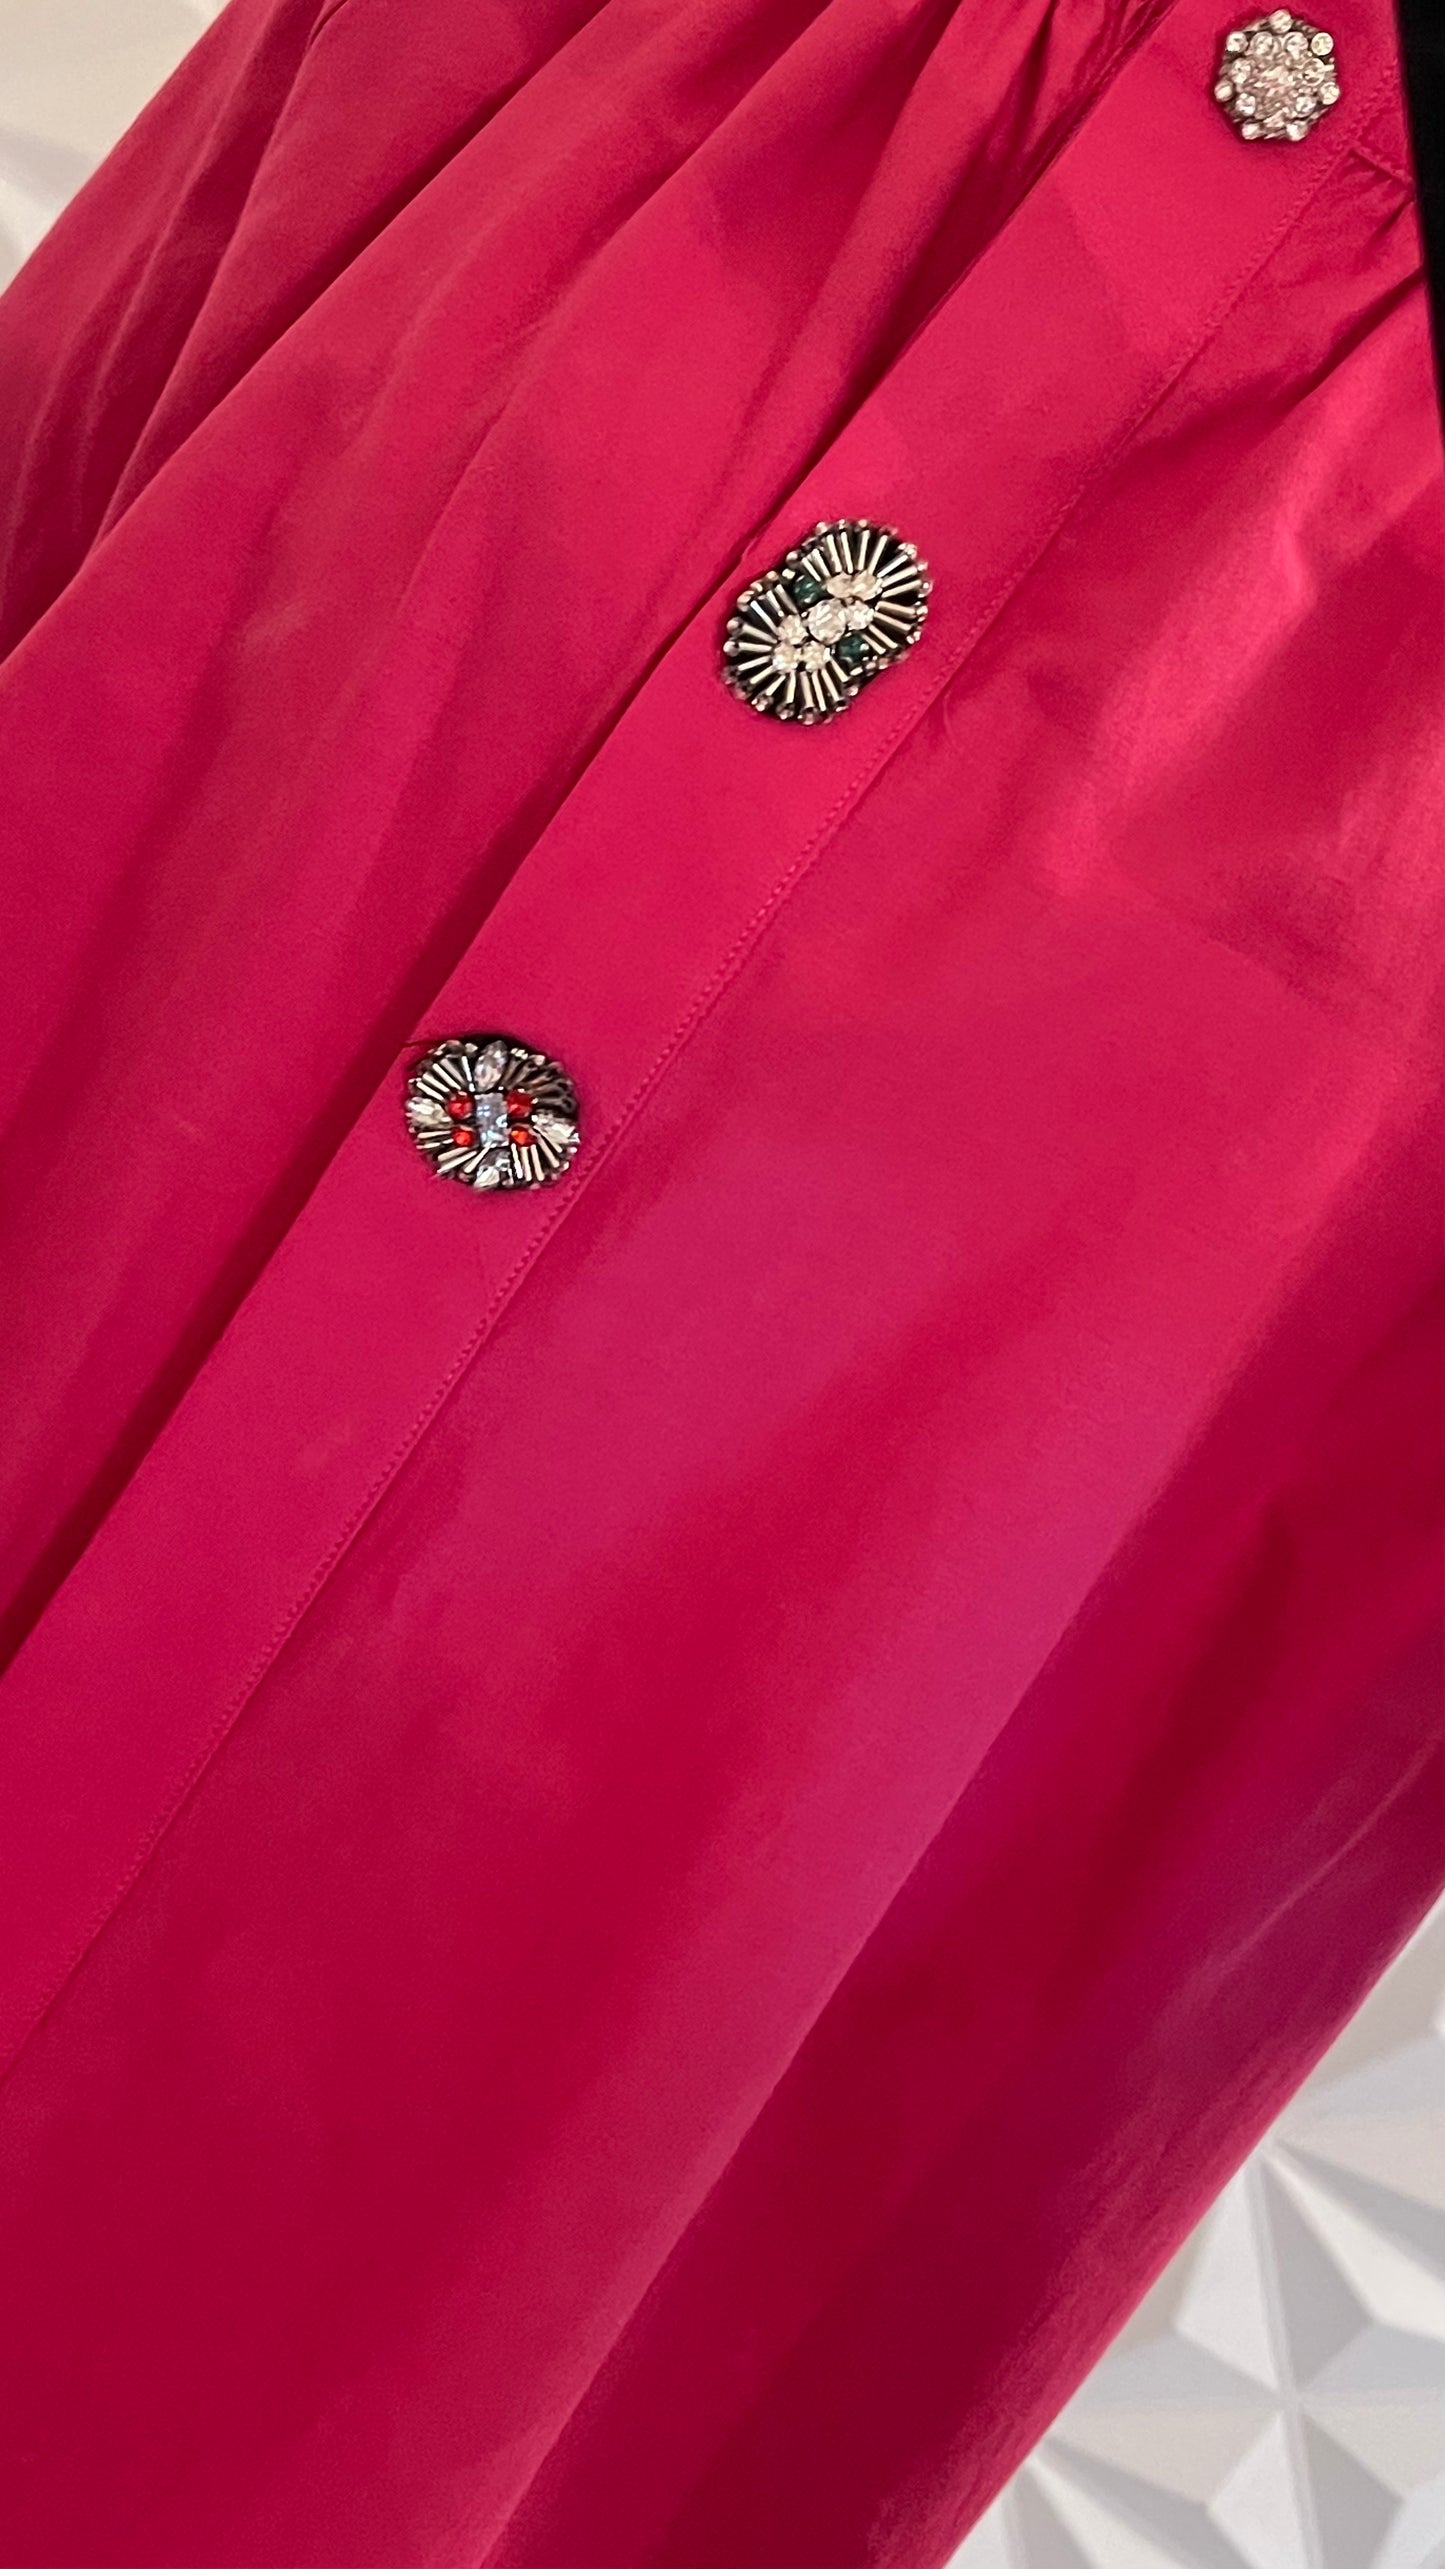 Chemise avec boutons ornementés - rose fuchsia